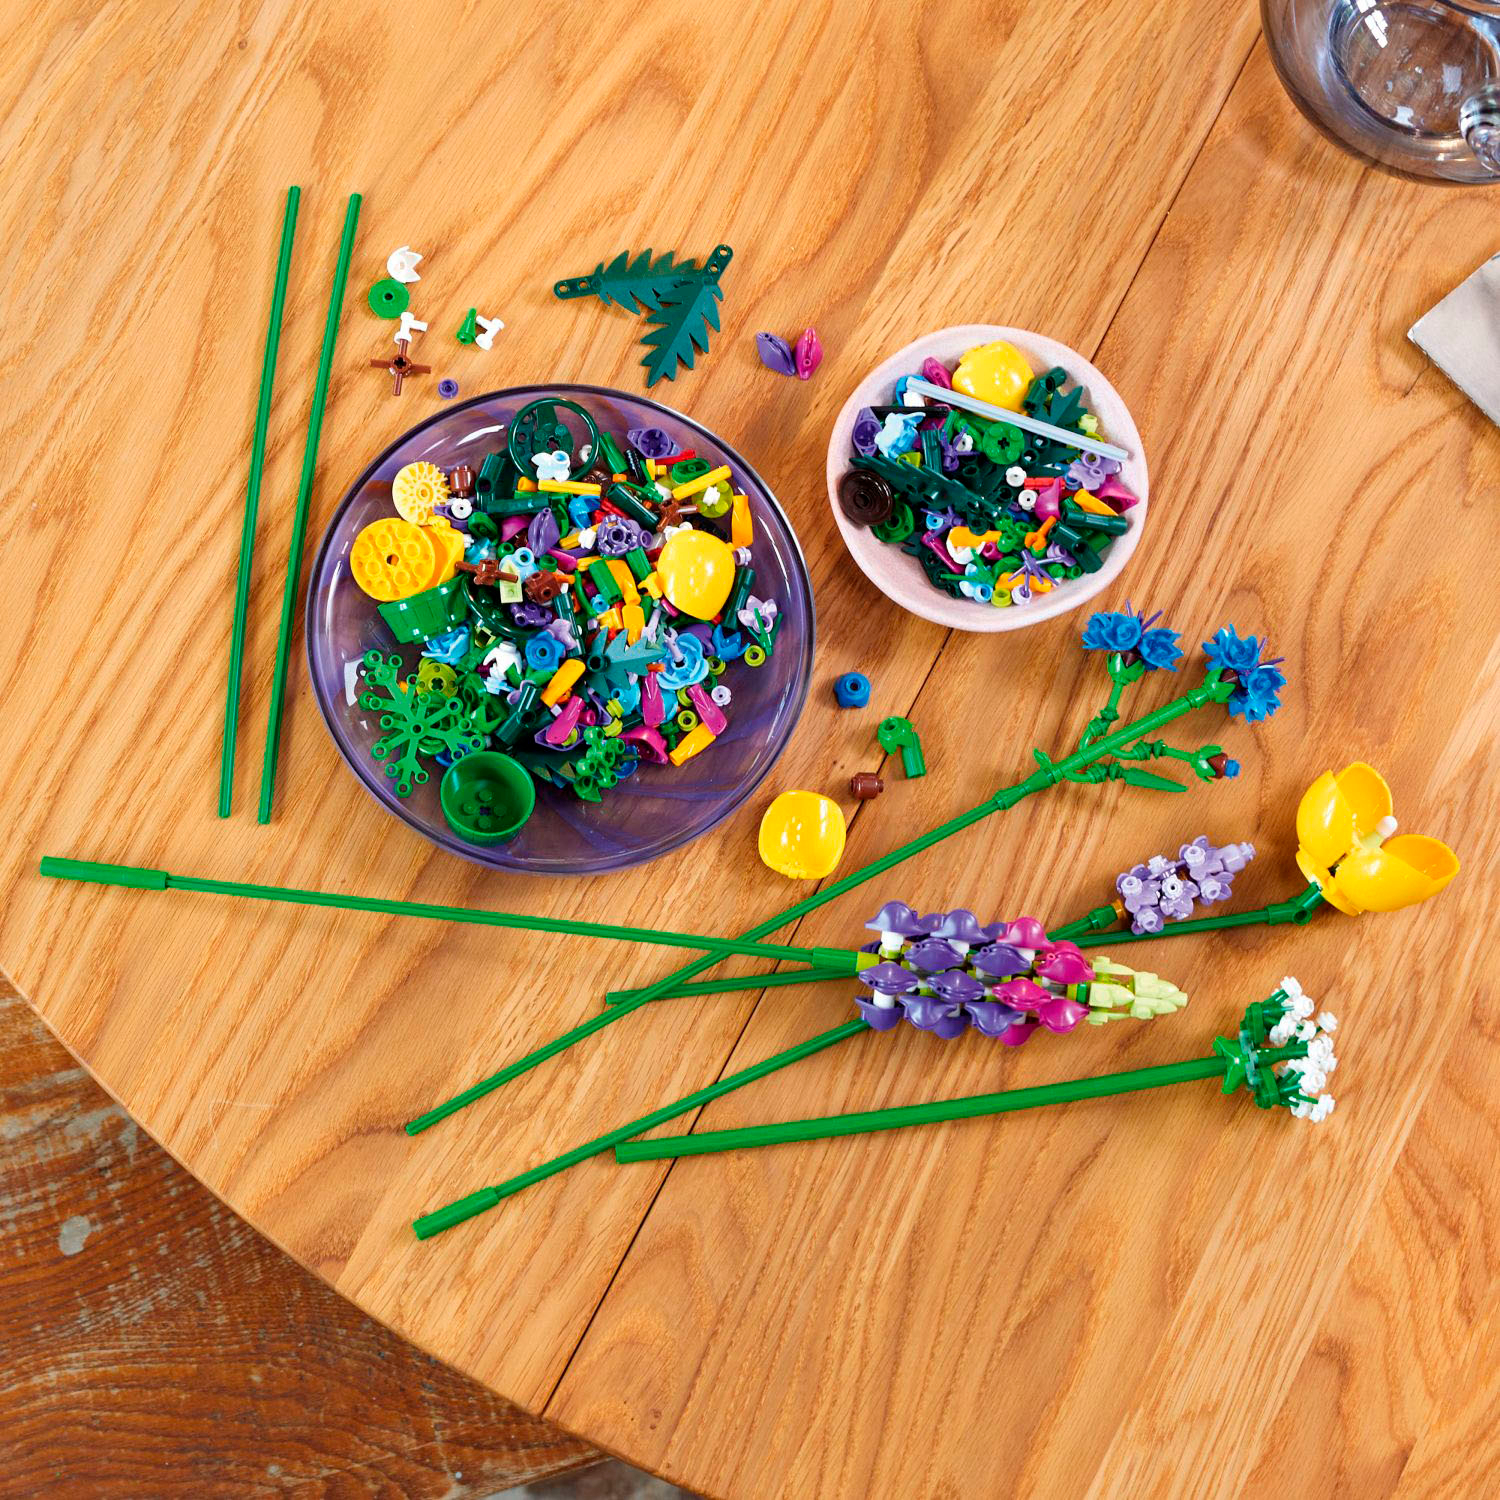 Lego Set of 2: 10313 Wild Flower Bouquet & 10314 Dried Flower Arrangement